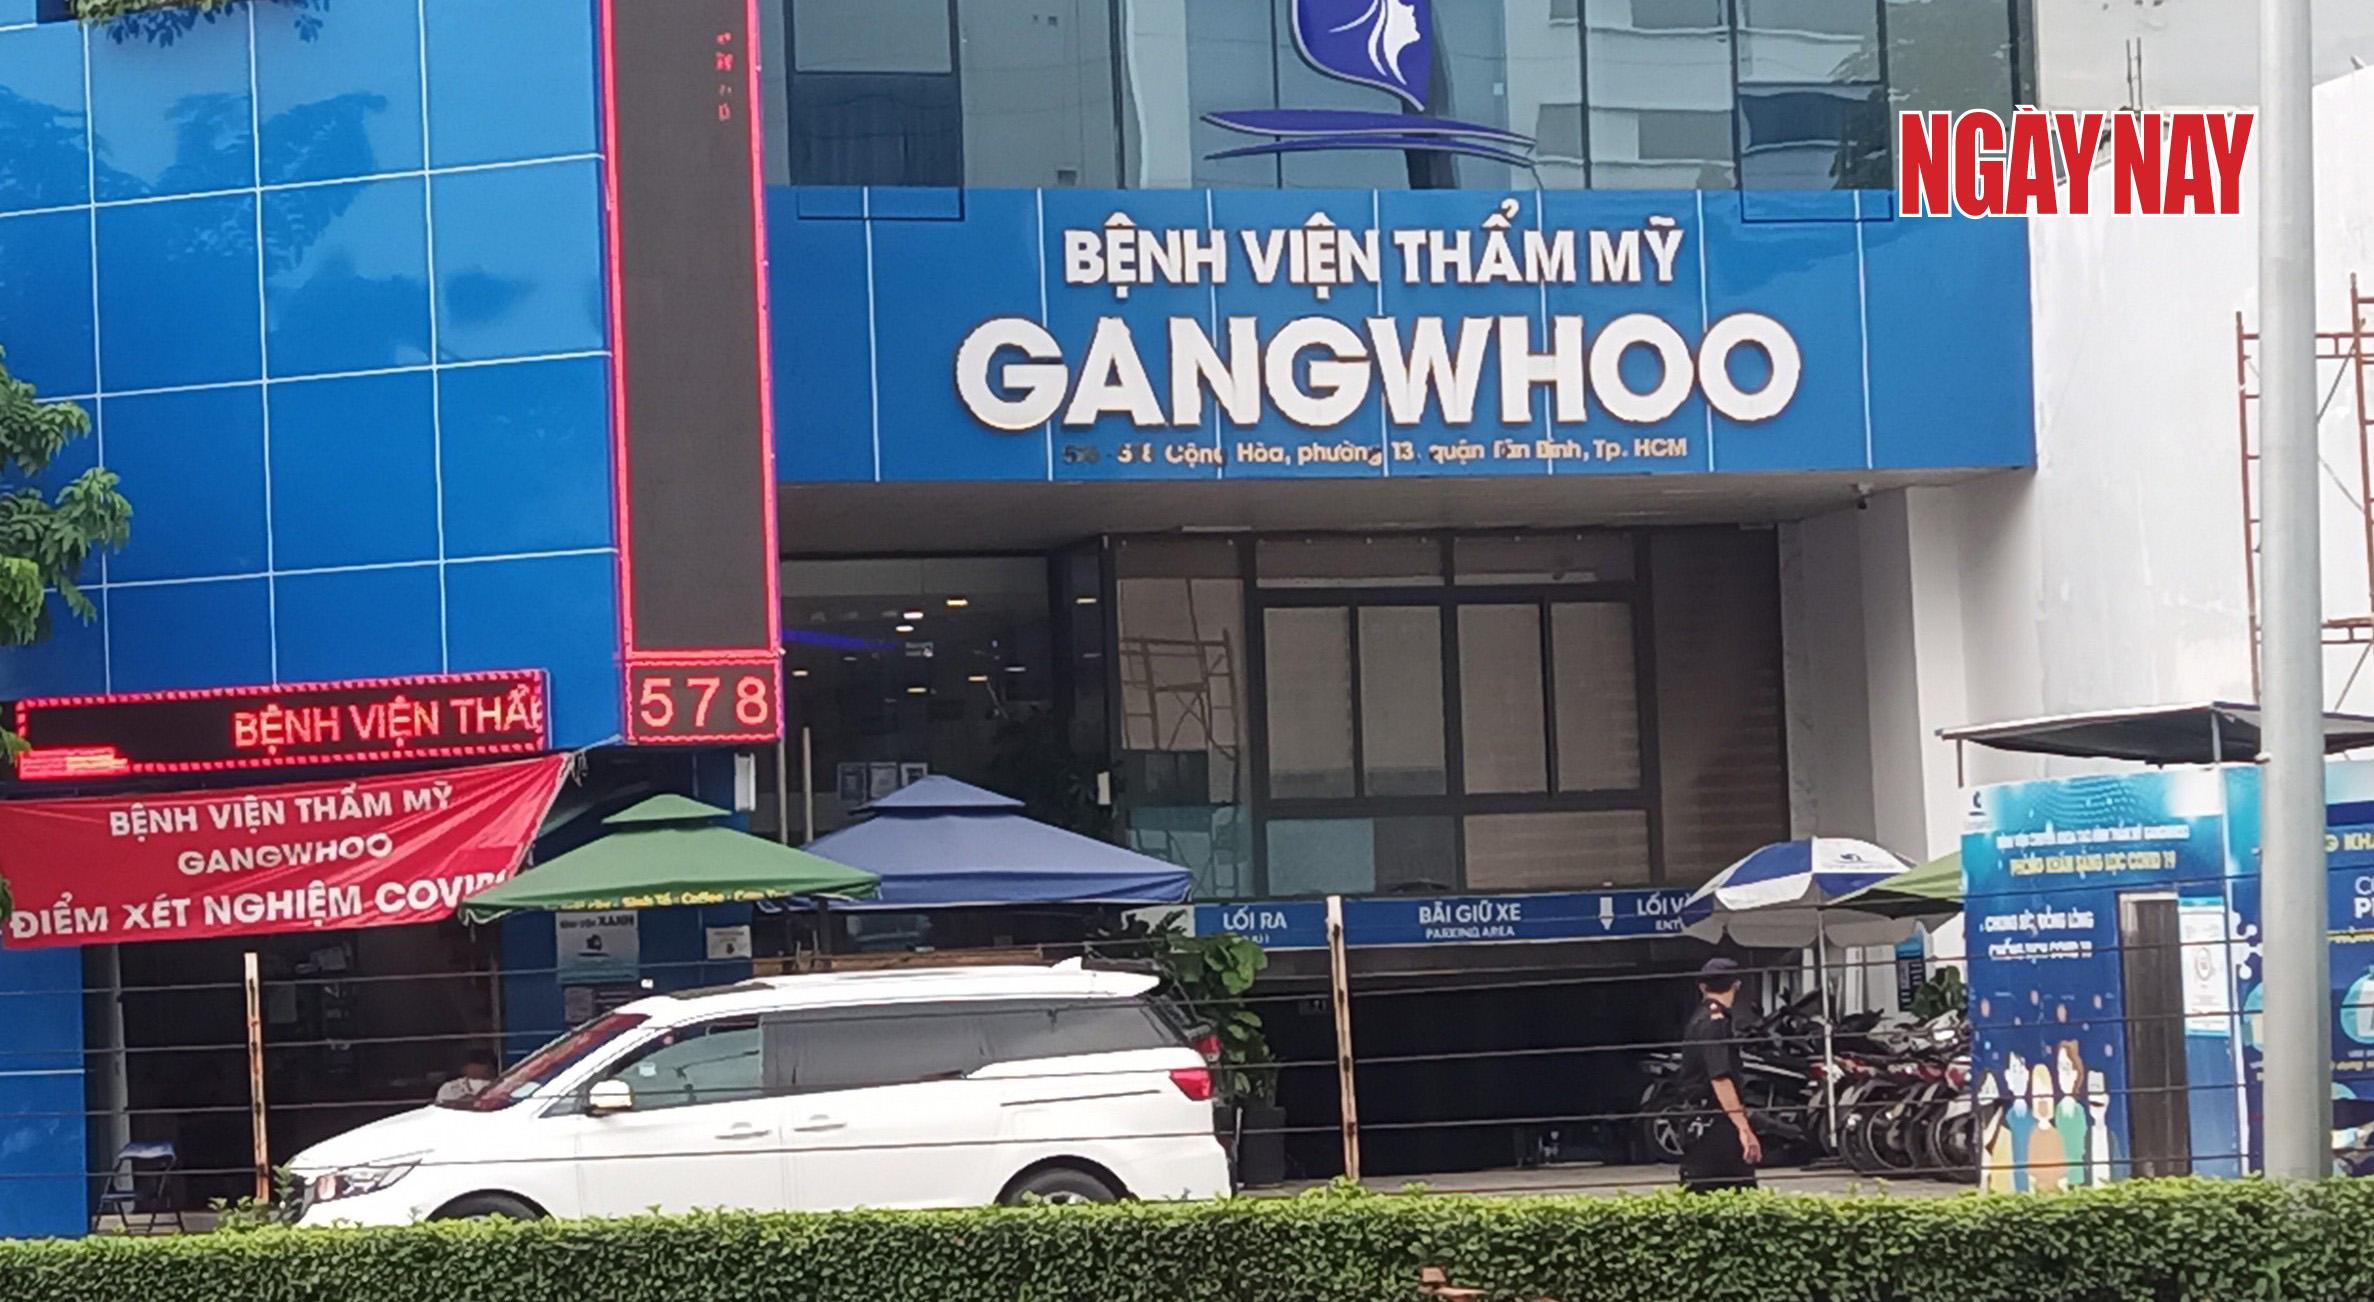 Tử vong sau hút mỡ bụng tại BV Gangwhoo - Bài 1: Sở Y tế chỉ cấm trên báo 